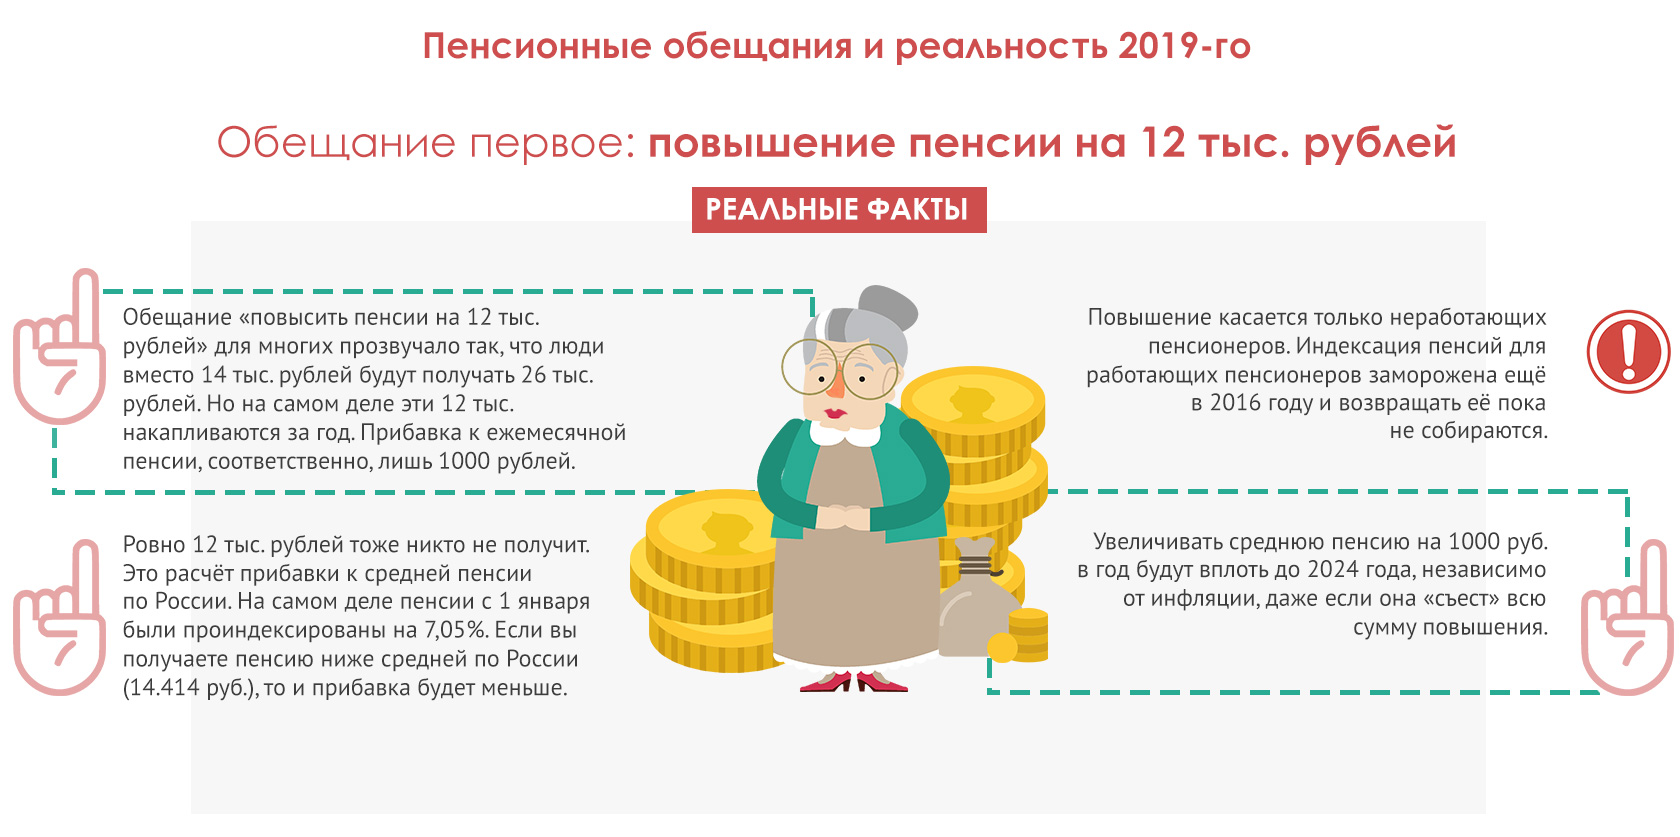 Почему пенсии увеличивают. Как накопить на пенсию самостоятельно. Как самому позаботиться о пенсии?. Проблема низких пенсий в России. Получение пенсии это распределение.